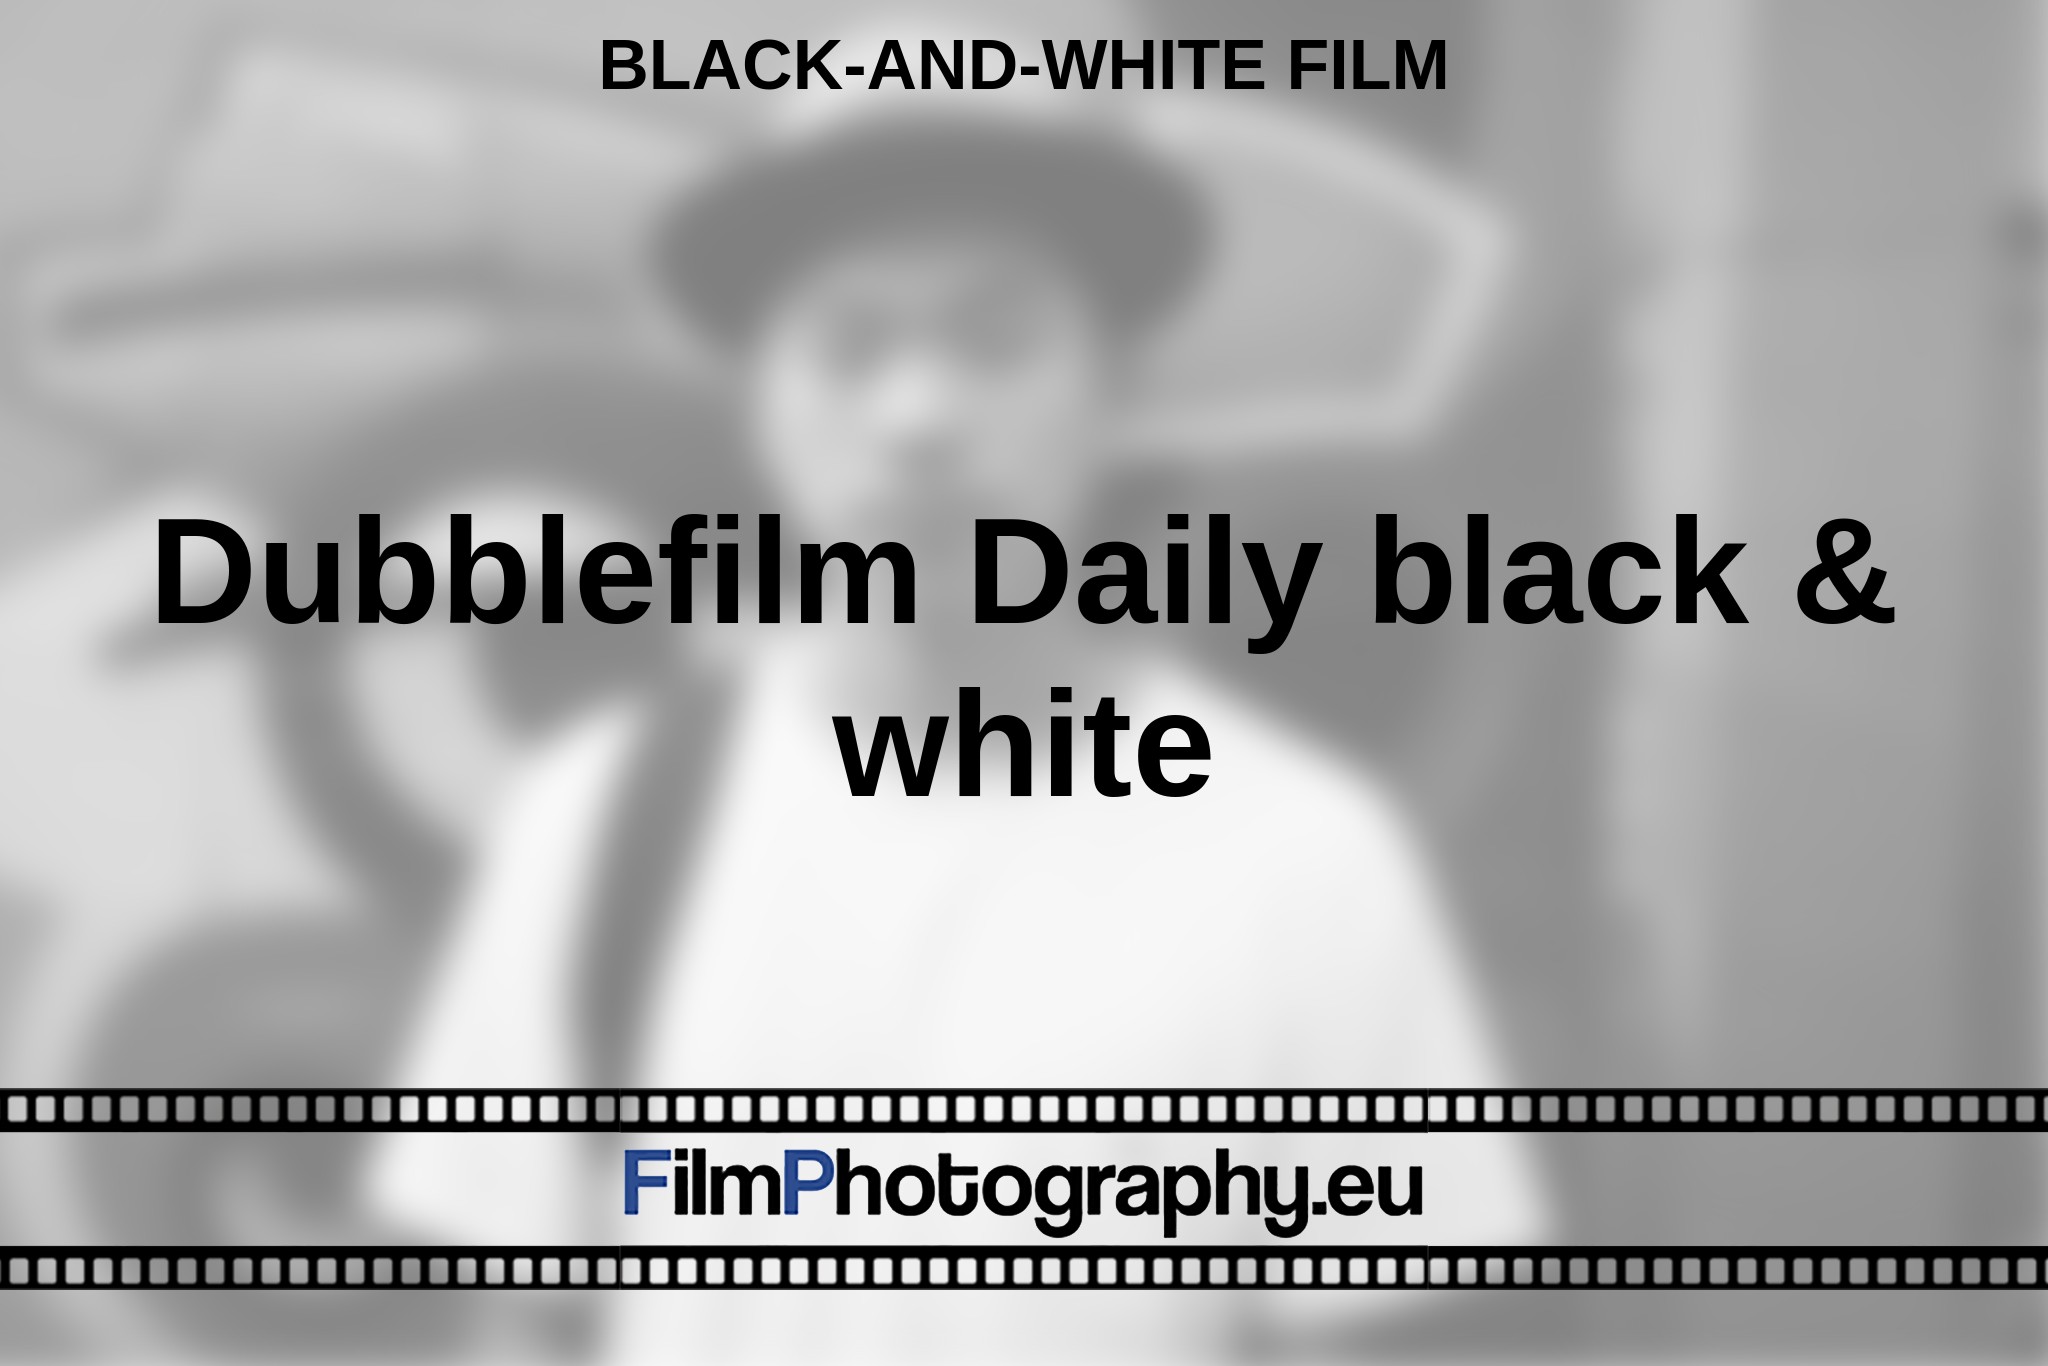 dubblefilm-daily-black-white-black-and-white-film-bnv.jpg